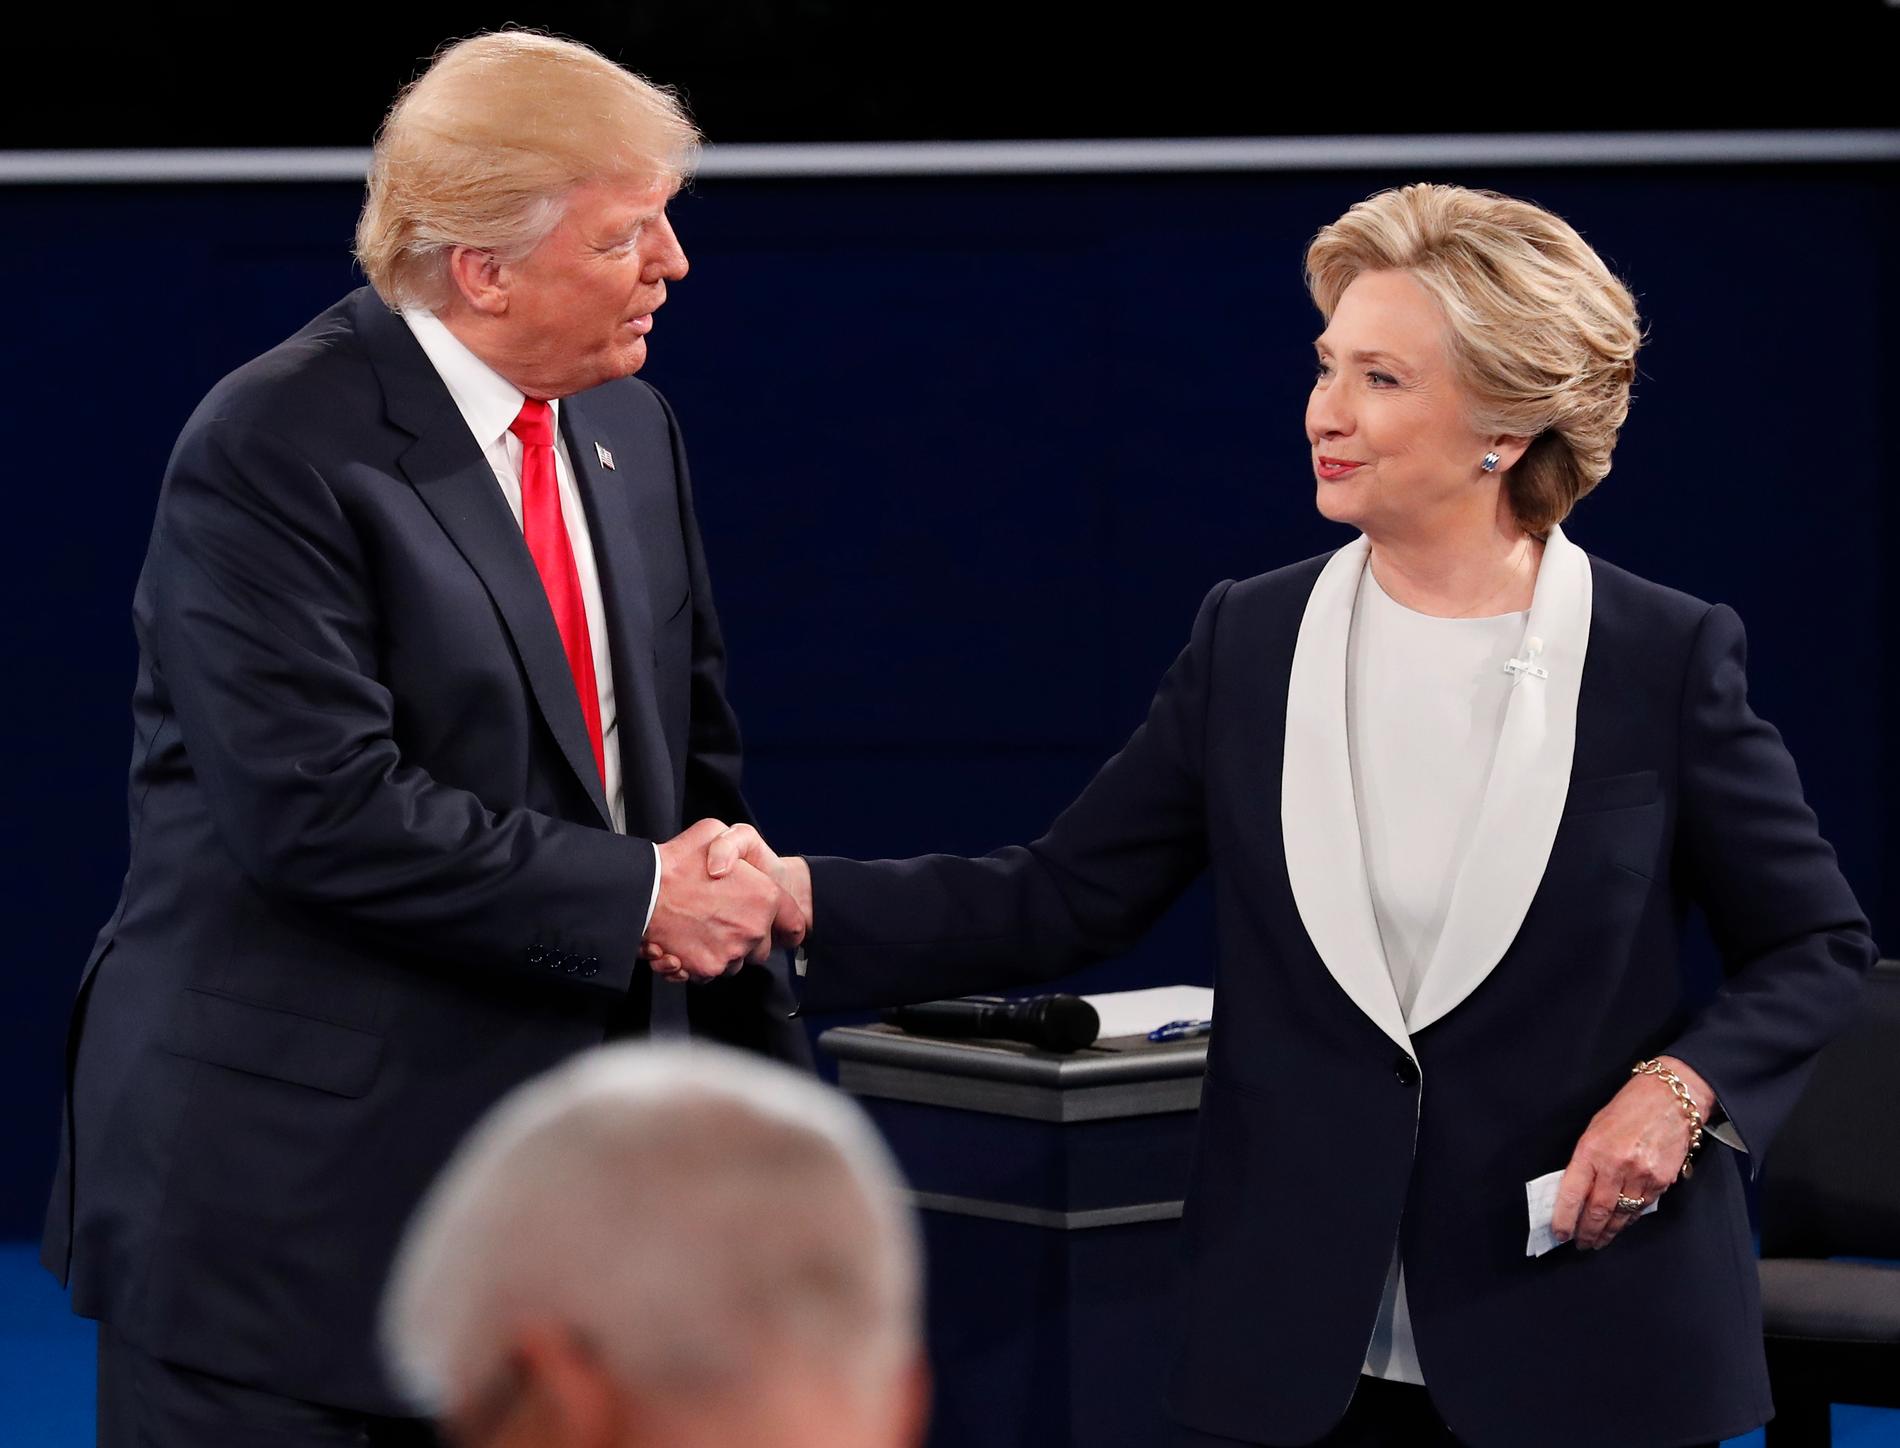 HÅNDHILSTE: Donald Trump og Hillary Clinton takker for kampen etter endt debatt i St. Louis natt til mandag norsk tid. Debatten hadde til tider høy temperatur. De håndhilste ikke før debatten, men gjorde det etter at den var ferdig.